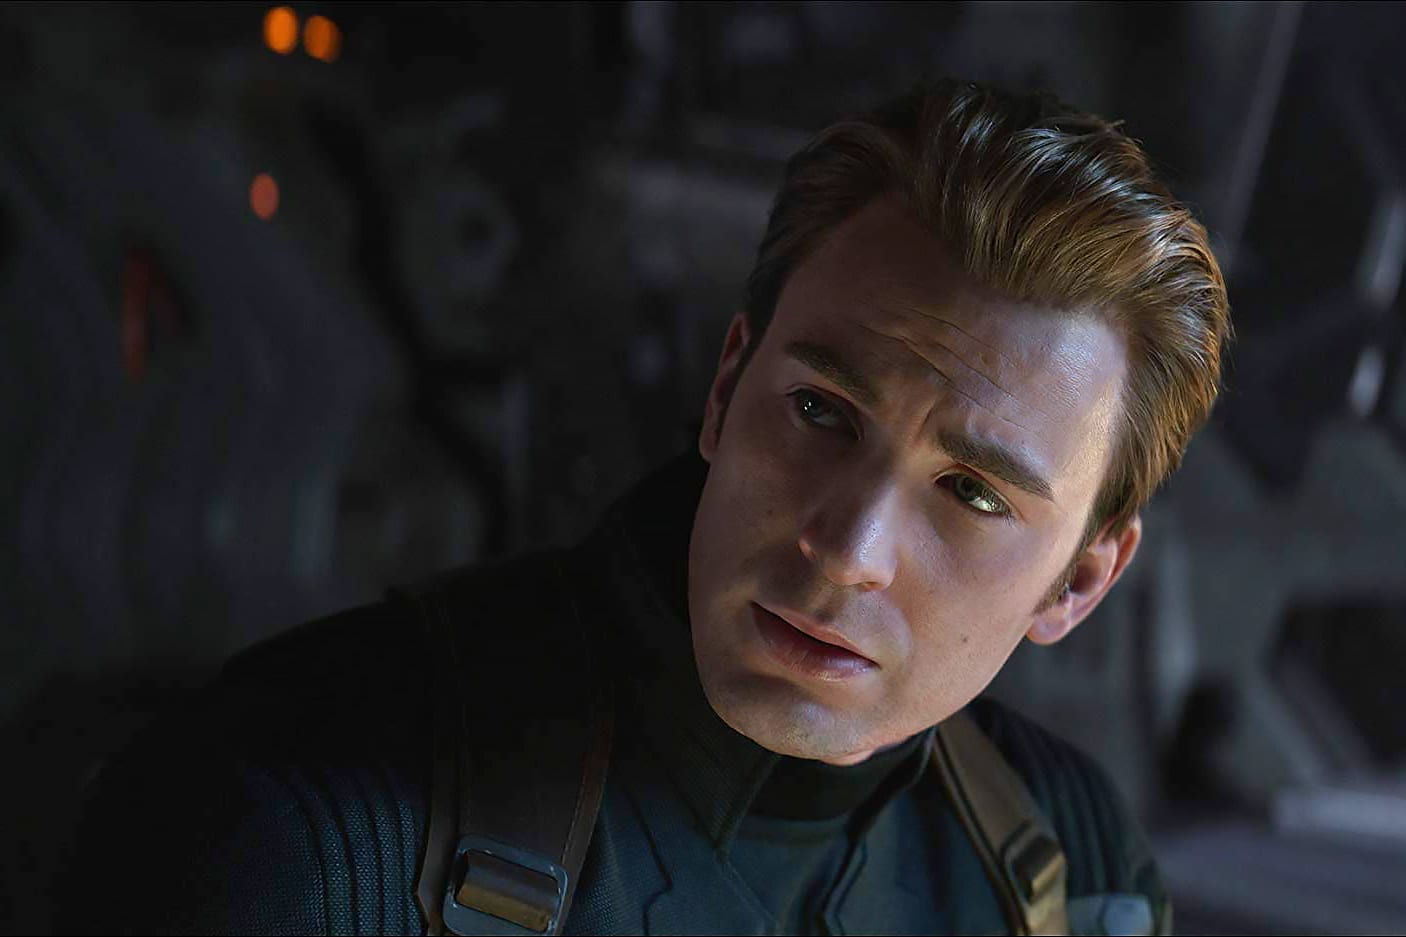 Chris Evans as Captain America in a scene from Marvel Studios' "Avengers: Endgame."